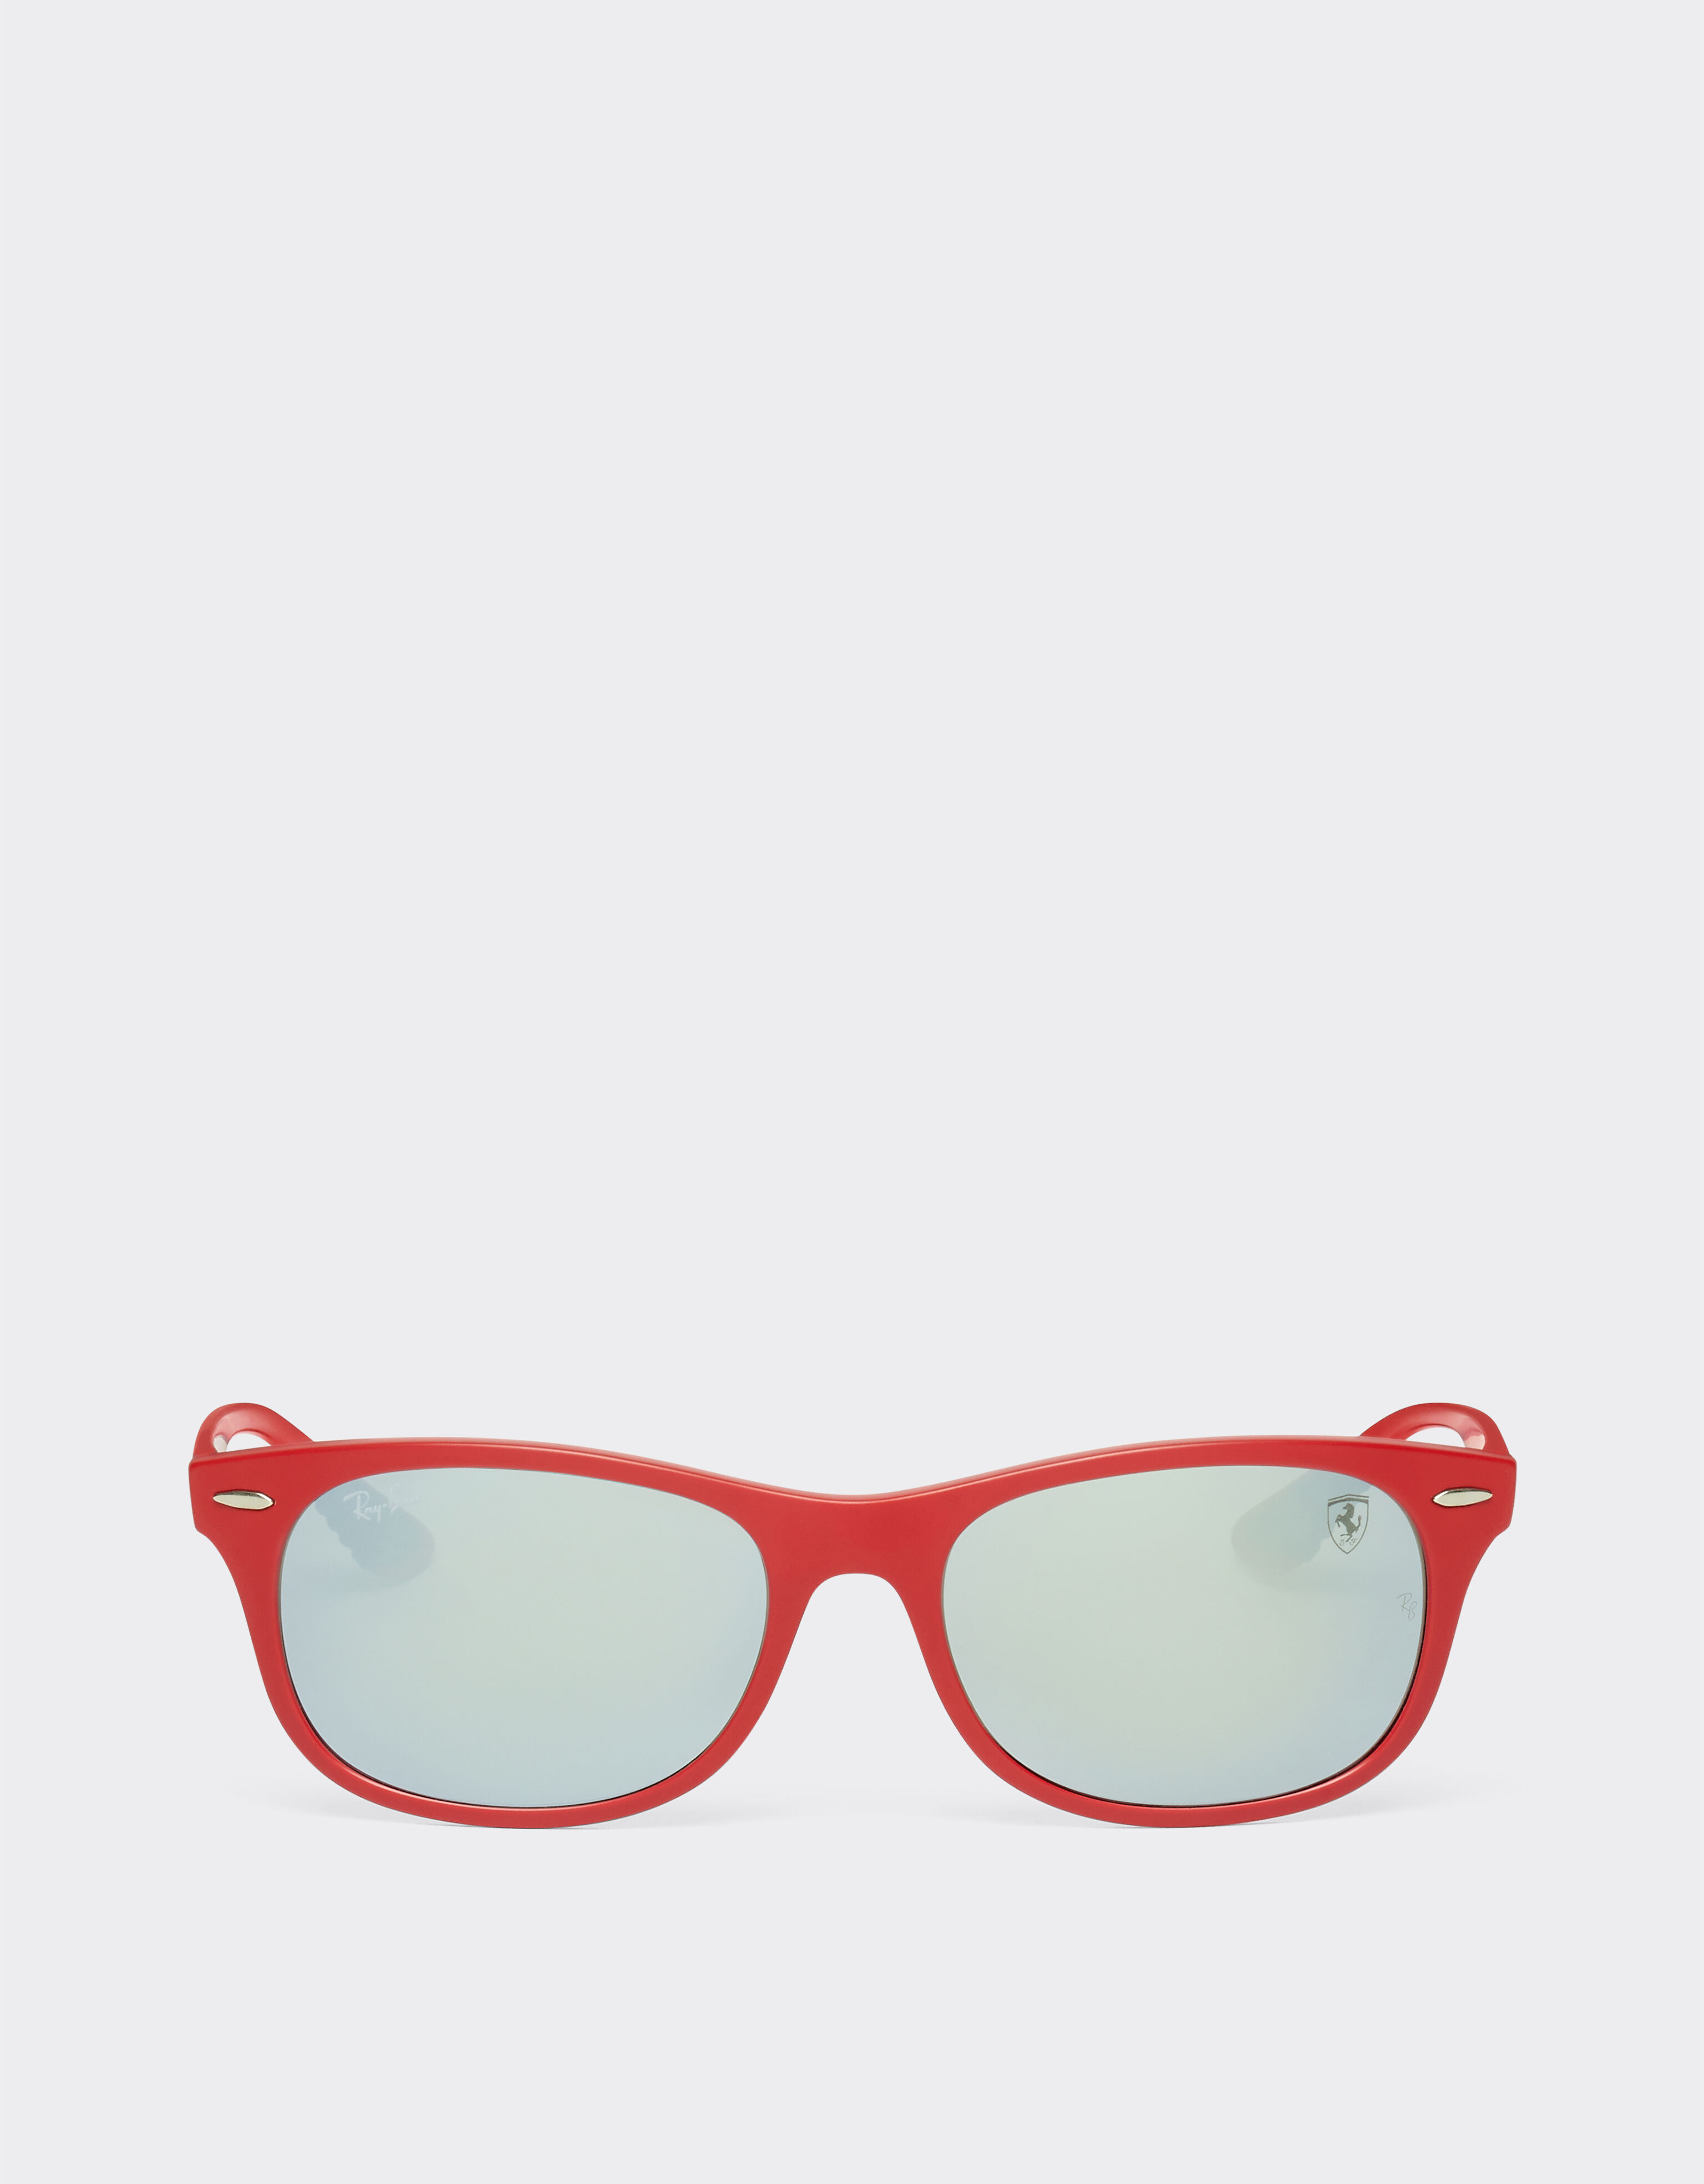 Ferrari Ray-Ban for Scuderia Ferrari 0RB4607M matt red sunglasses with silver mirror green lenses Red F1298f